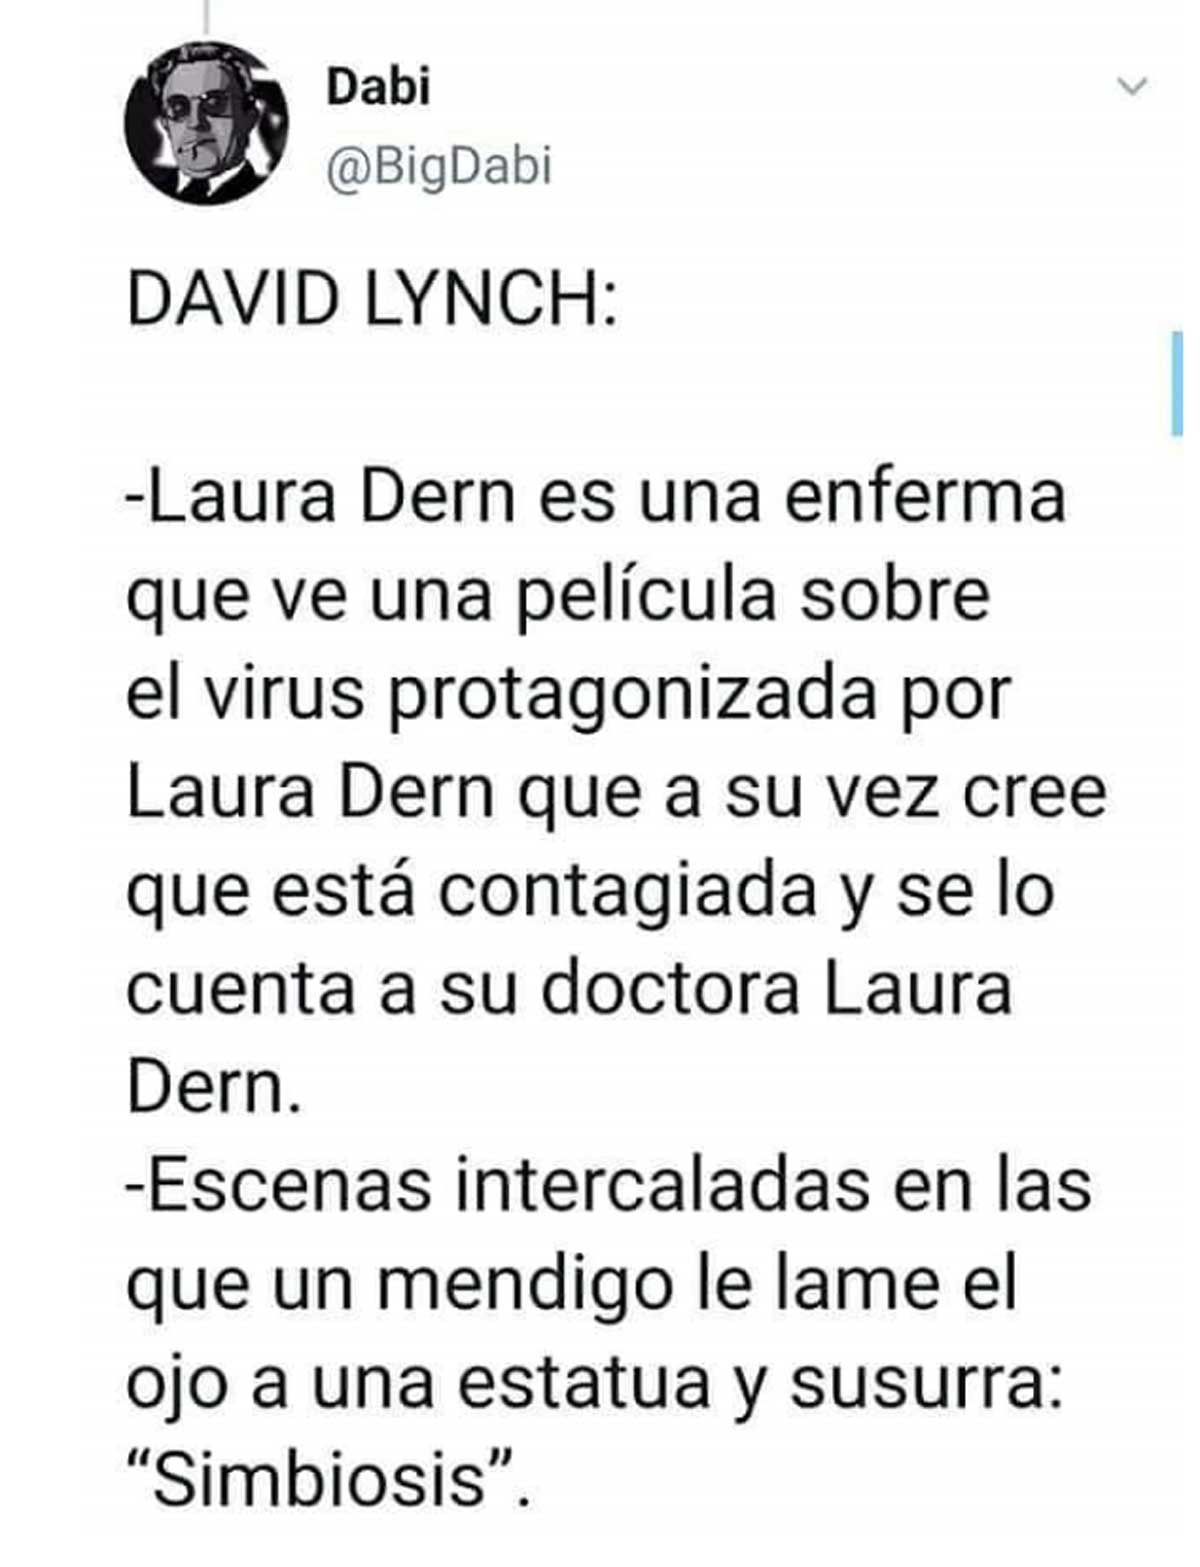 lynch